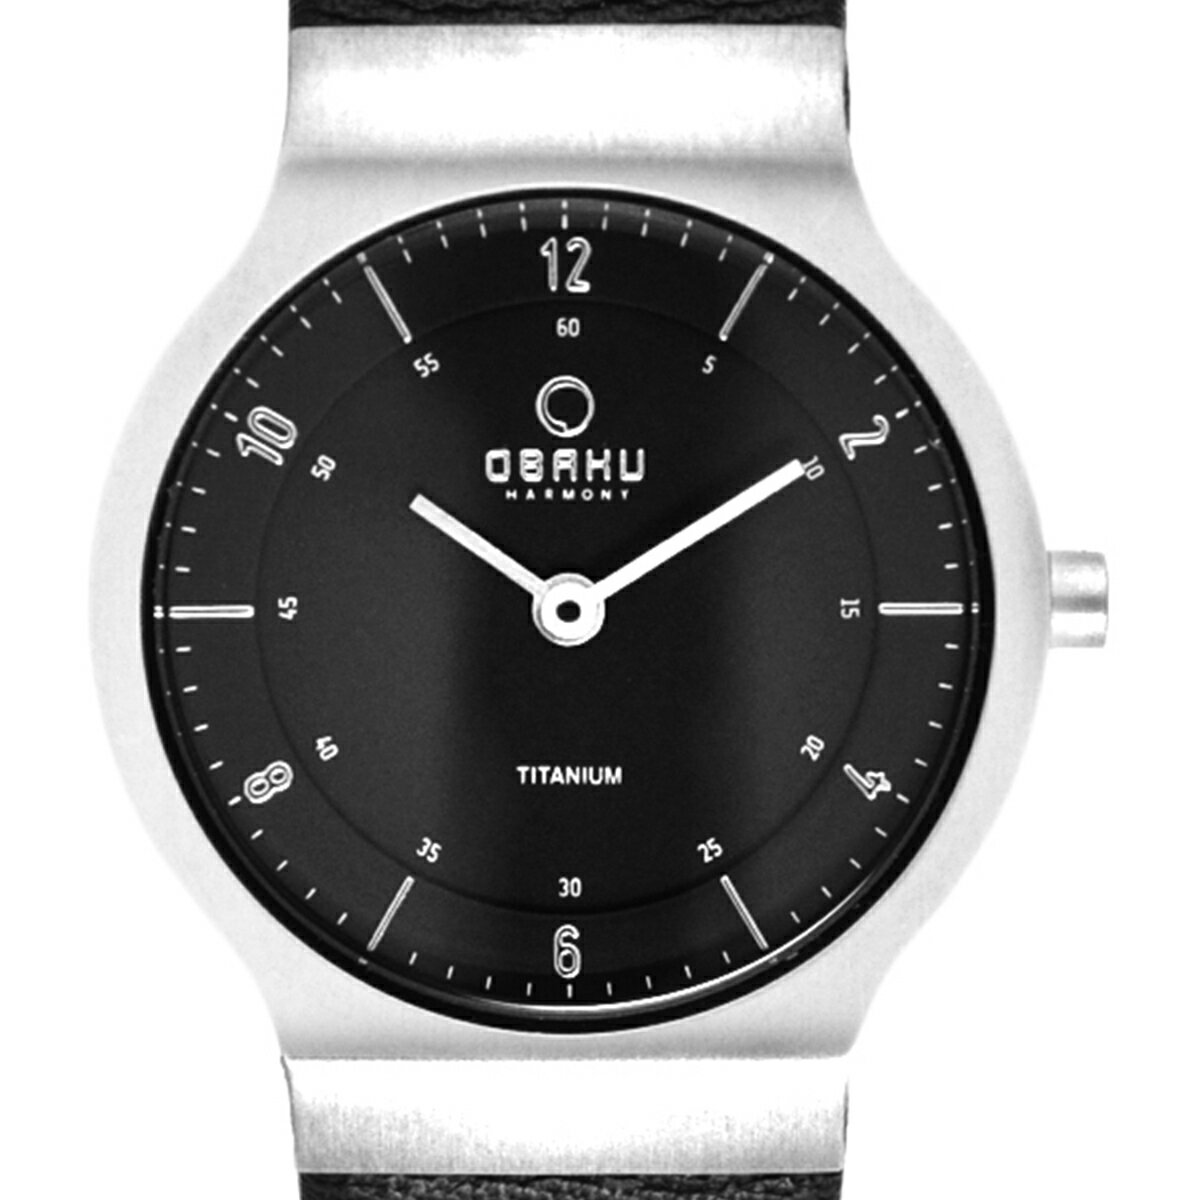 【残り1点】OBAKU オバック クォーツ 腕時計 デンマーク シンプル 薄型 ファッション [V133STBRB] 並行輸入品 純正ケース メーカー保証